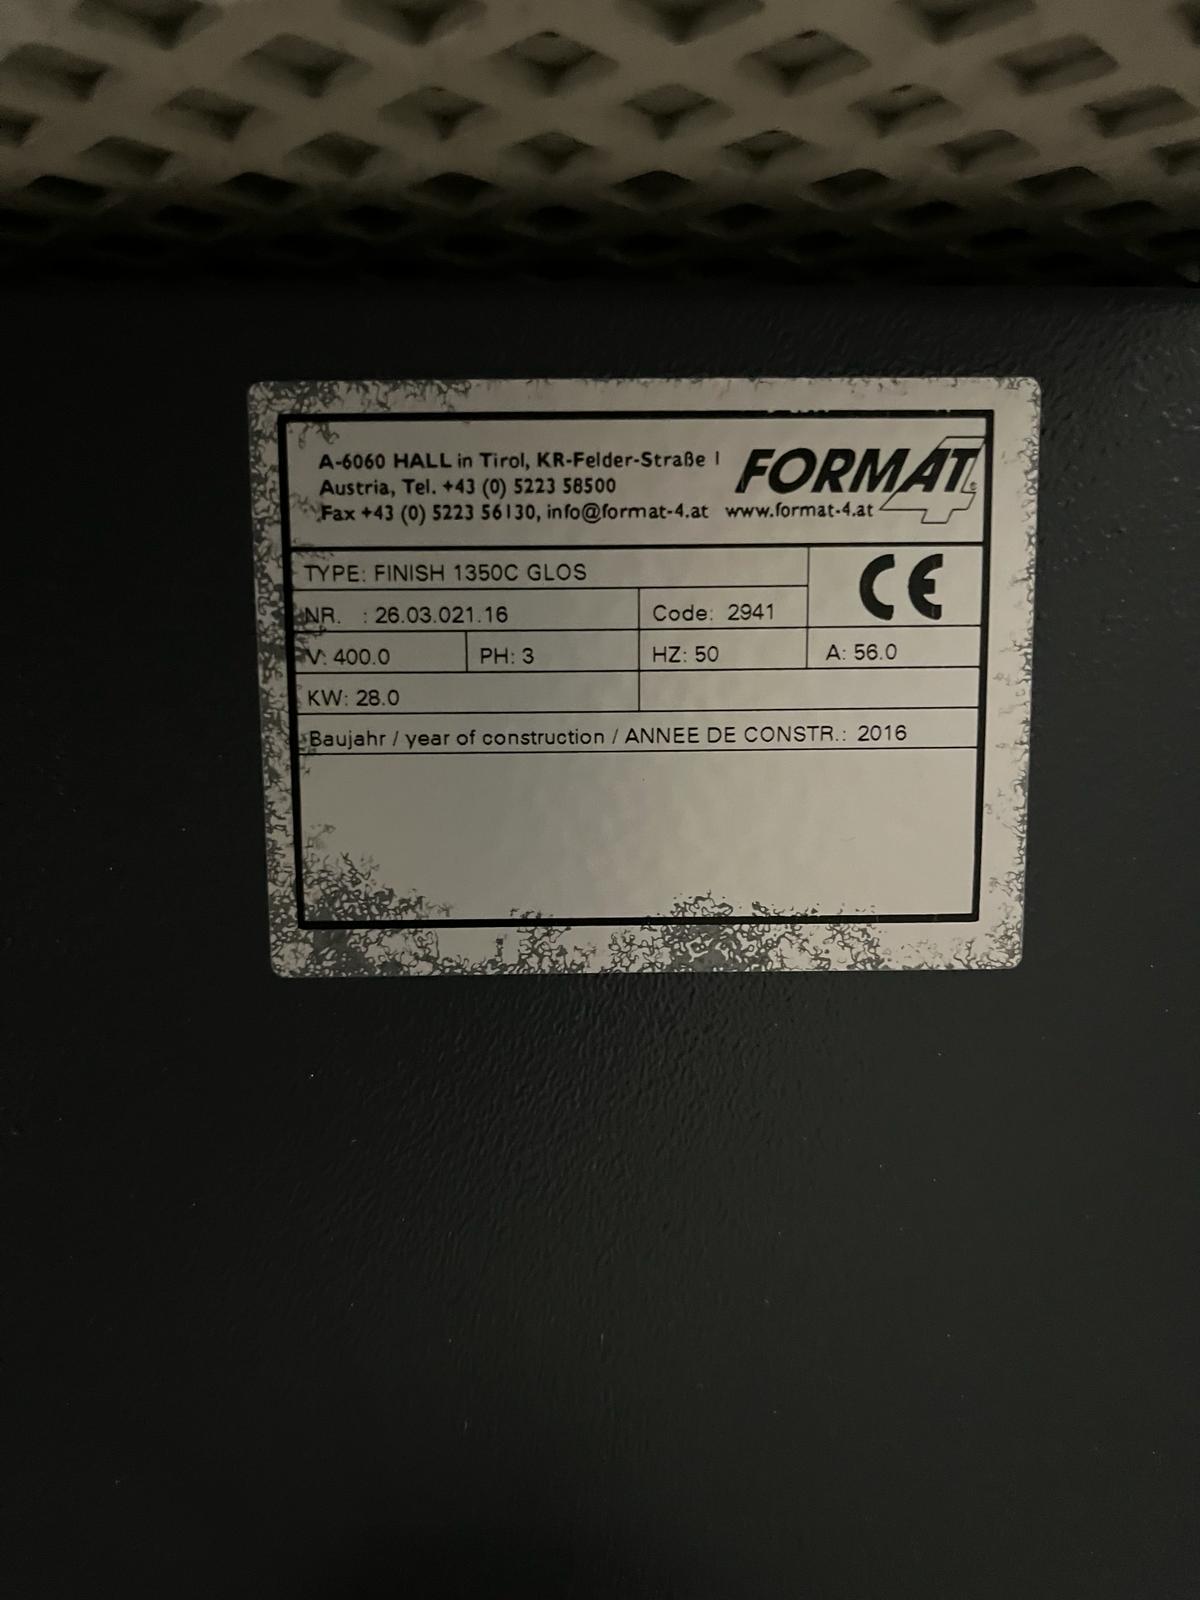 Format 4 Finish 1350 C-G